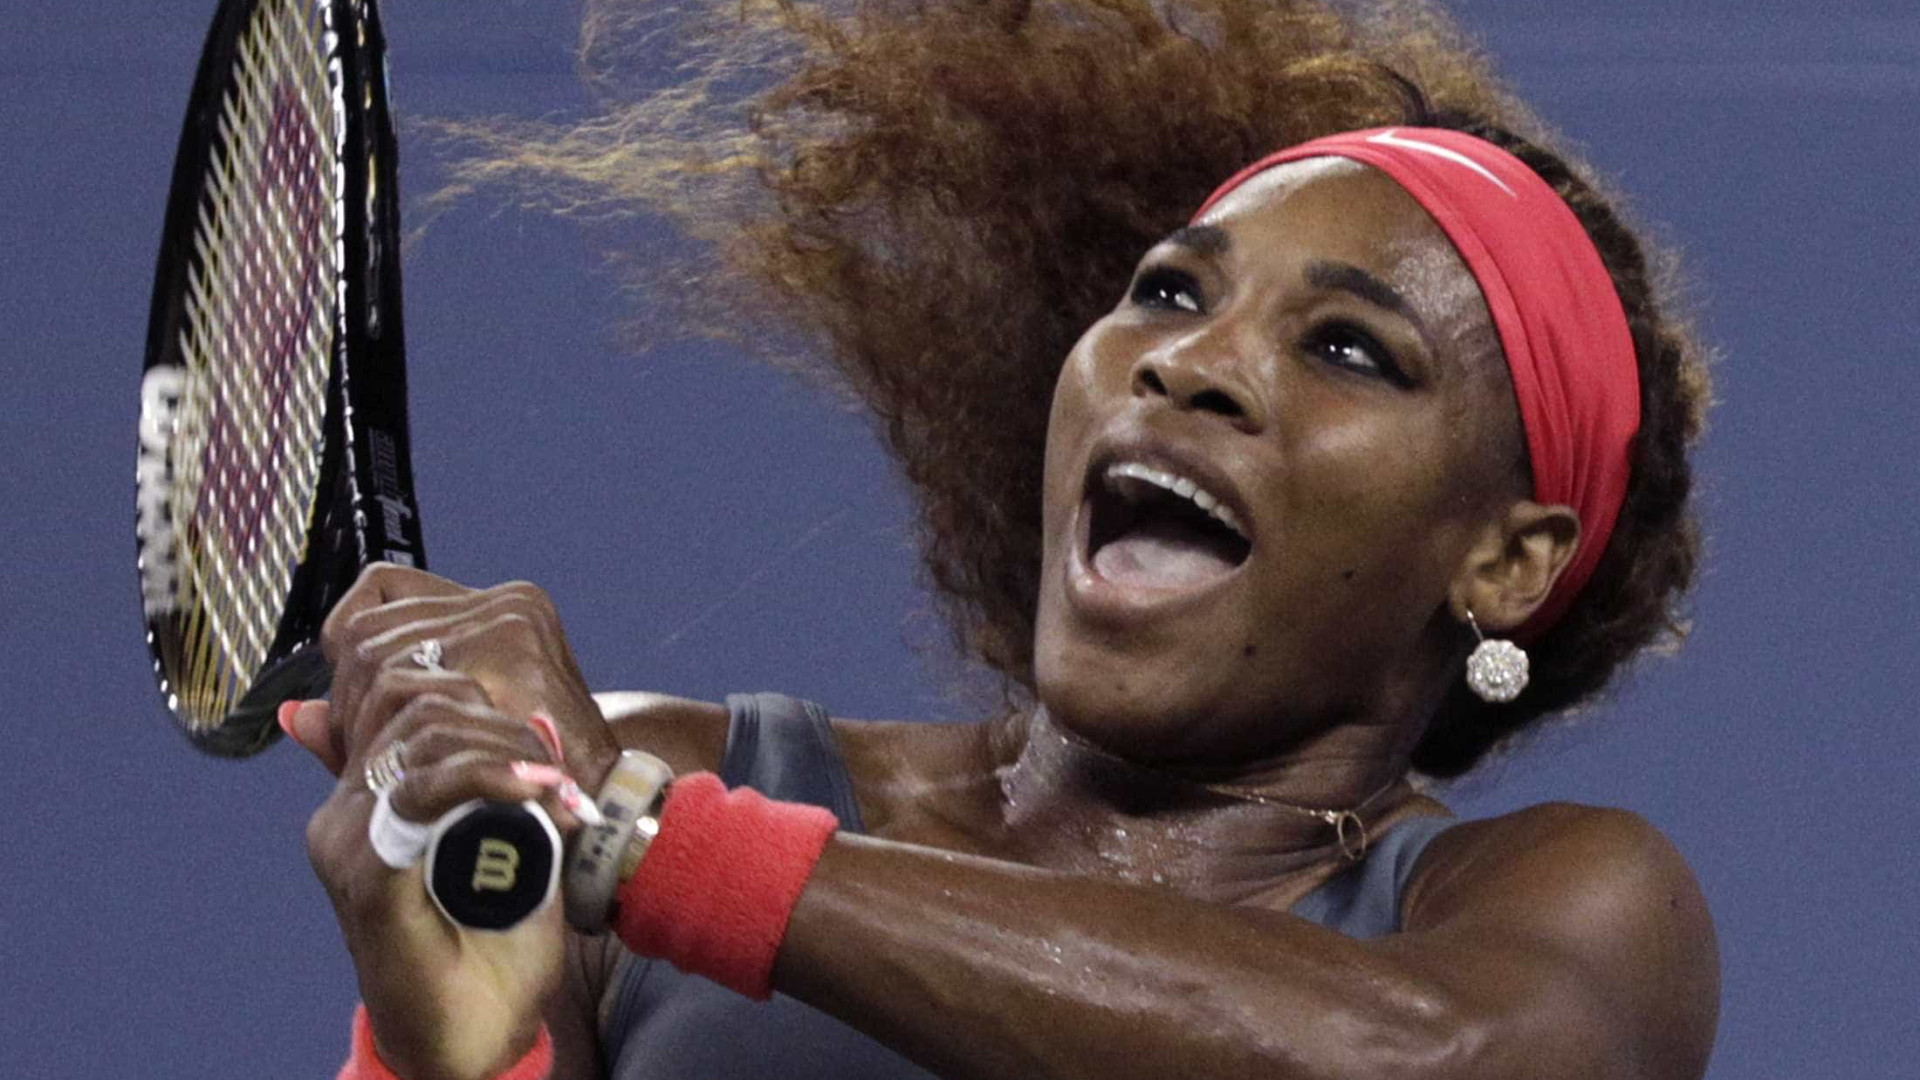 Serena Williams é multada por danificar quadra em Wimbledon